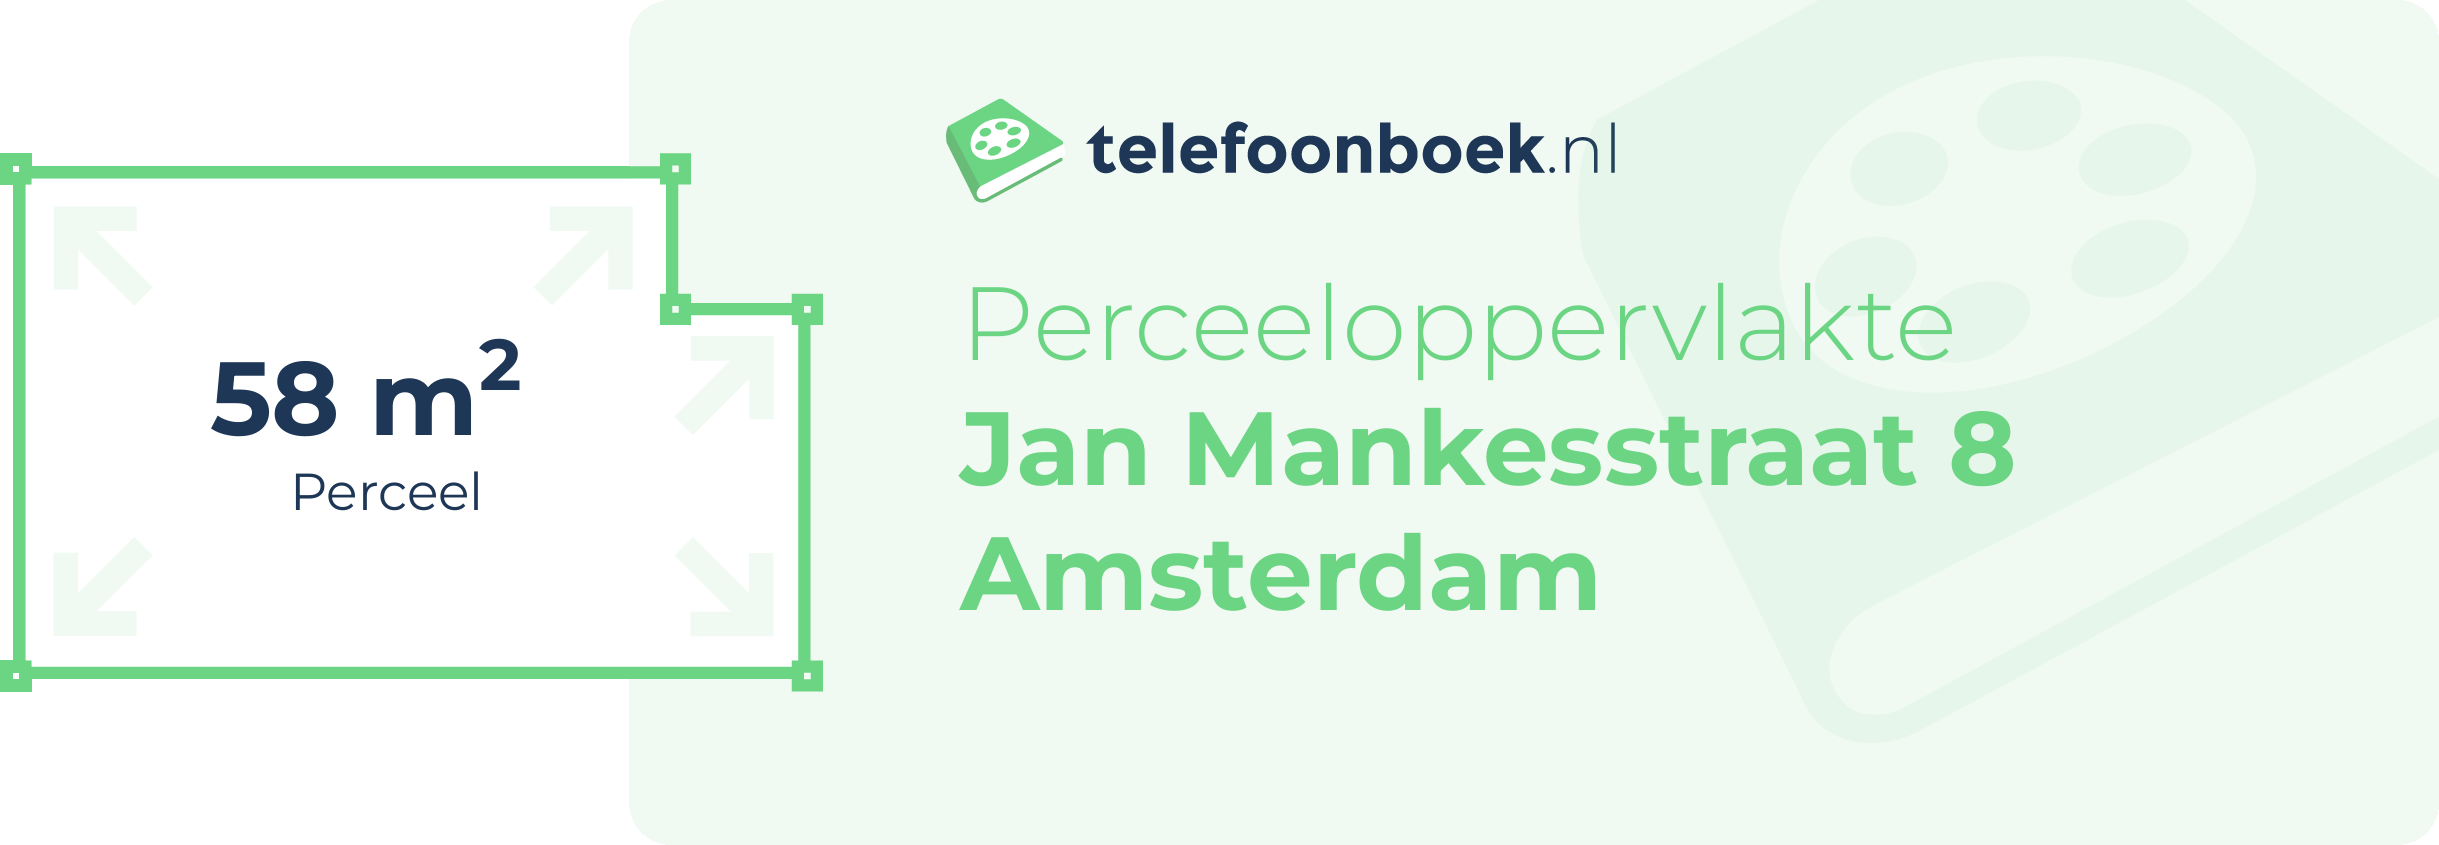 Perceeloppervlakte Jan Mankesstraat 8 Amsterdam